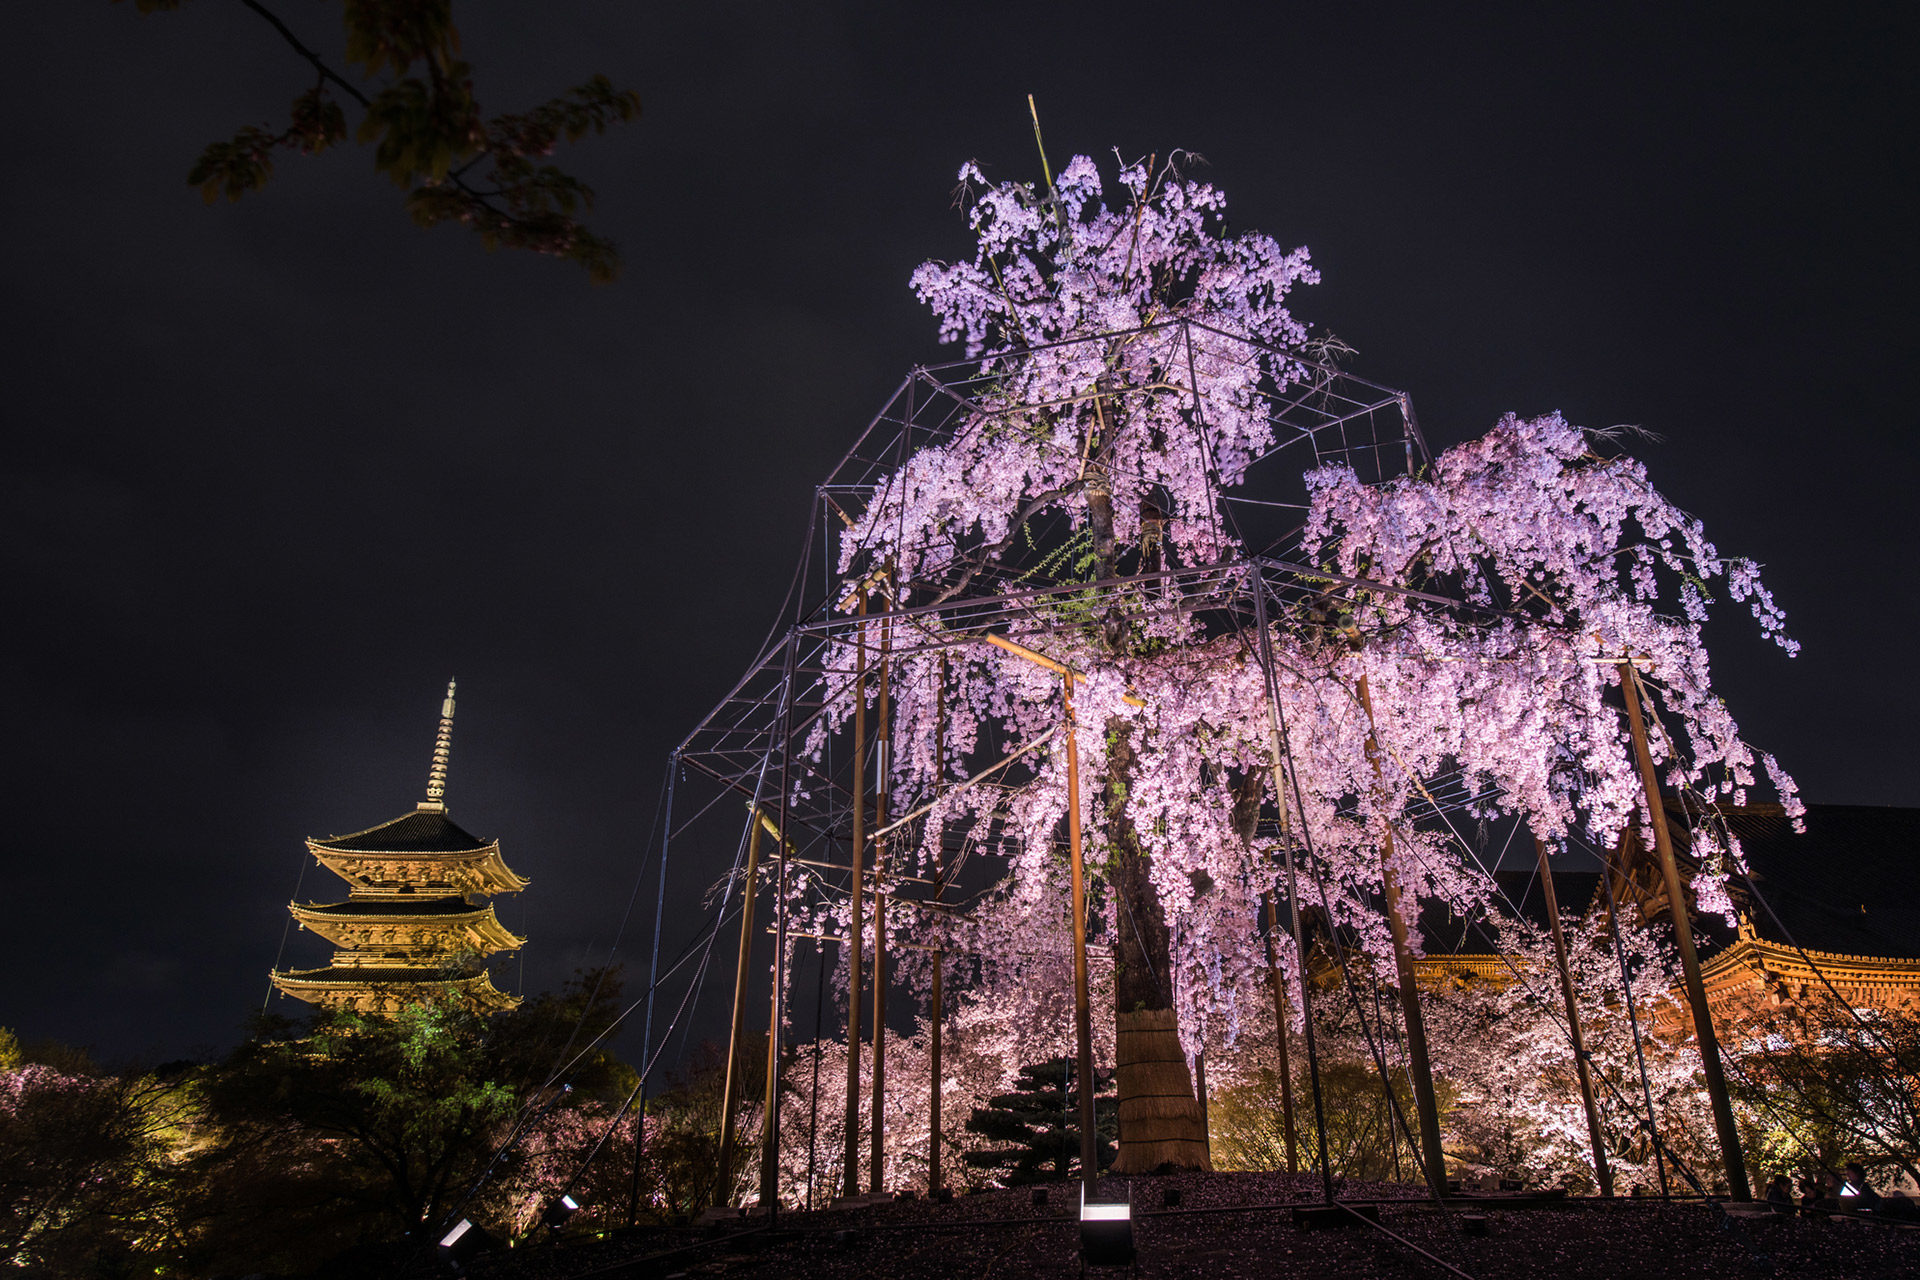 京都でしか見られない 夜に輝く桜が見られる場所とは Caedekyoto カエデ京都 紅葉と伝統美を引き継ぐバッグ